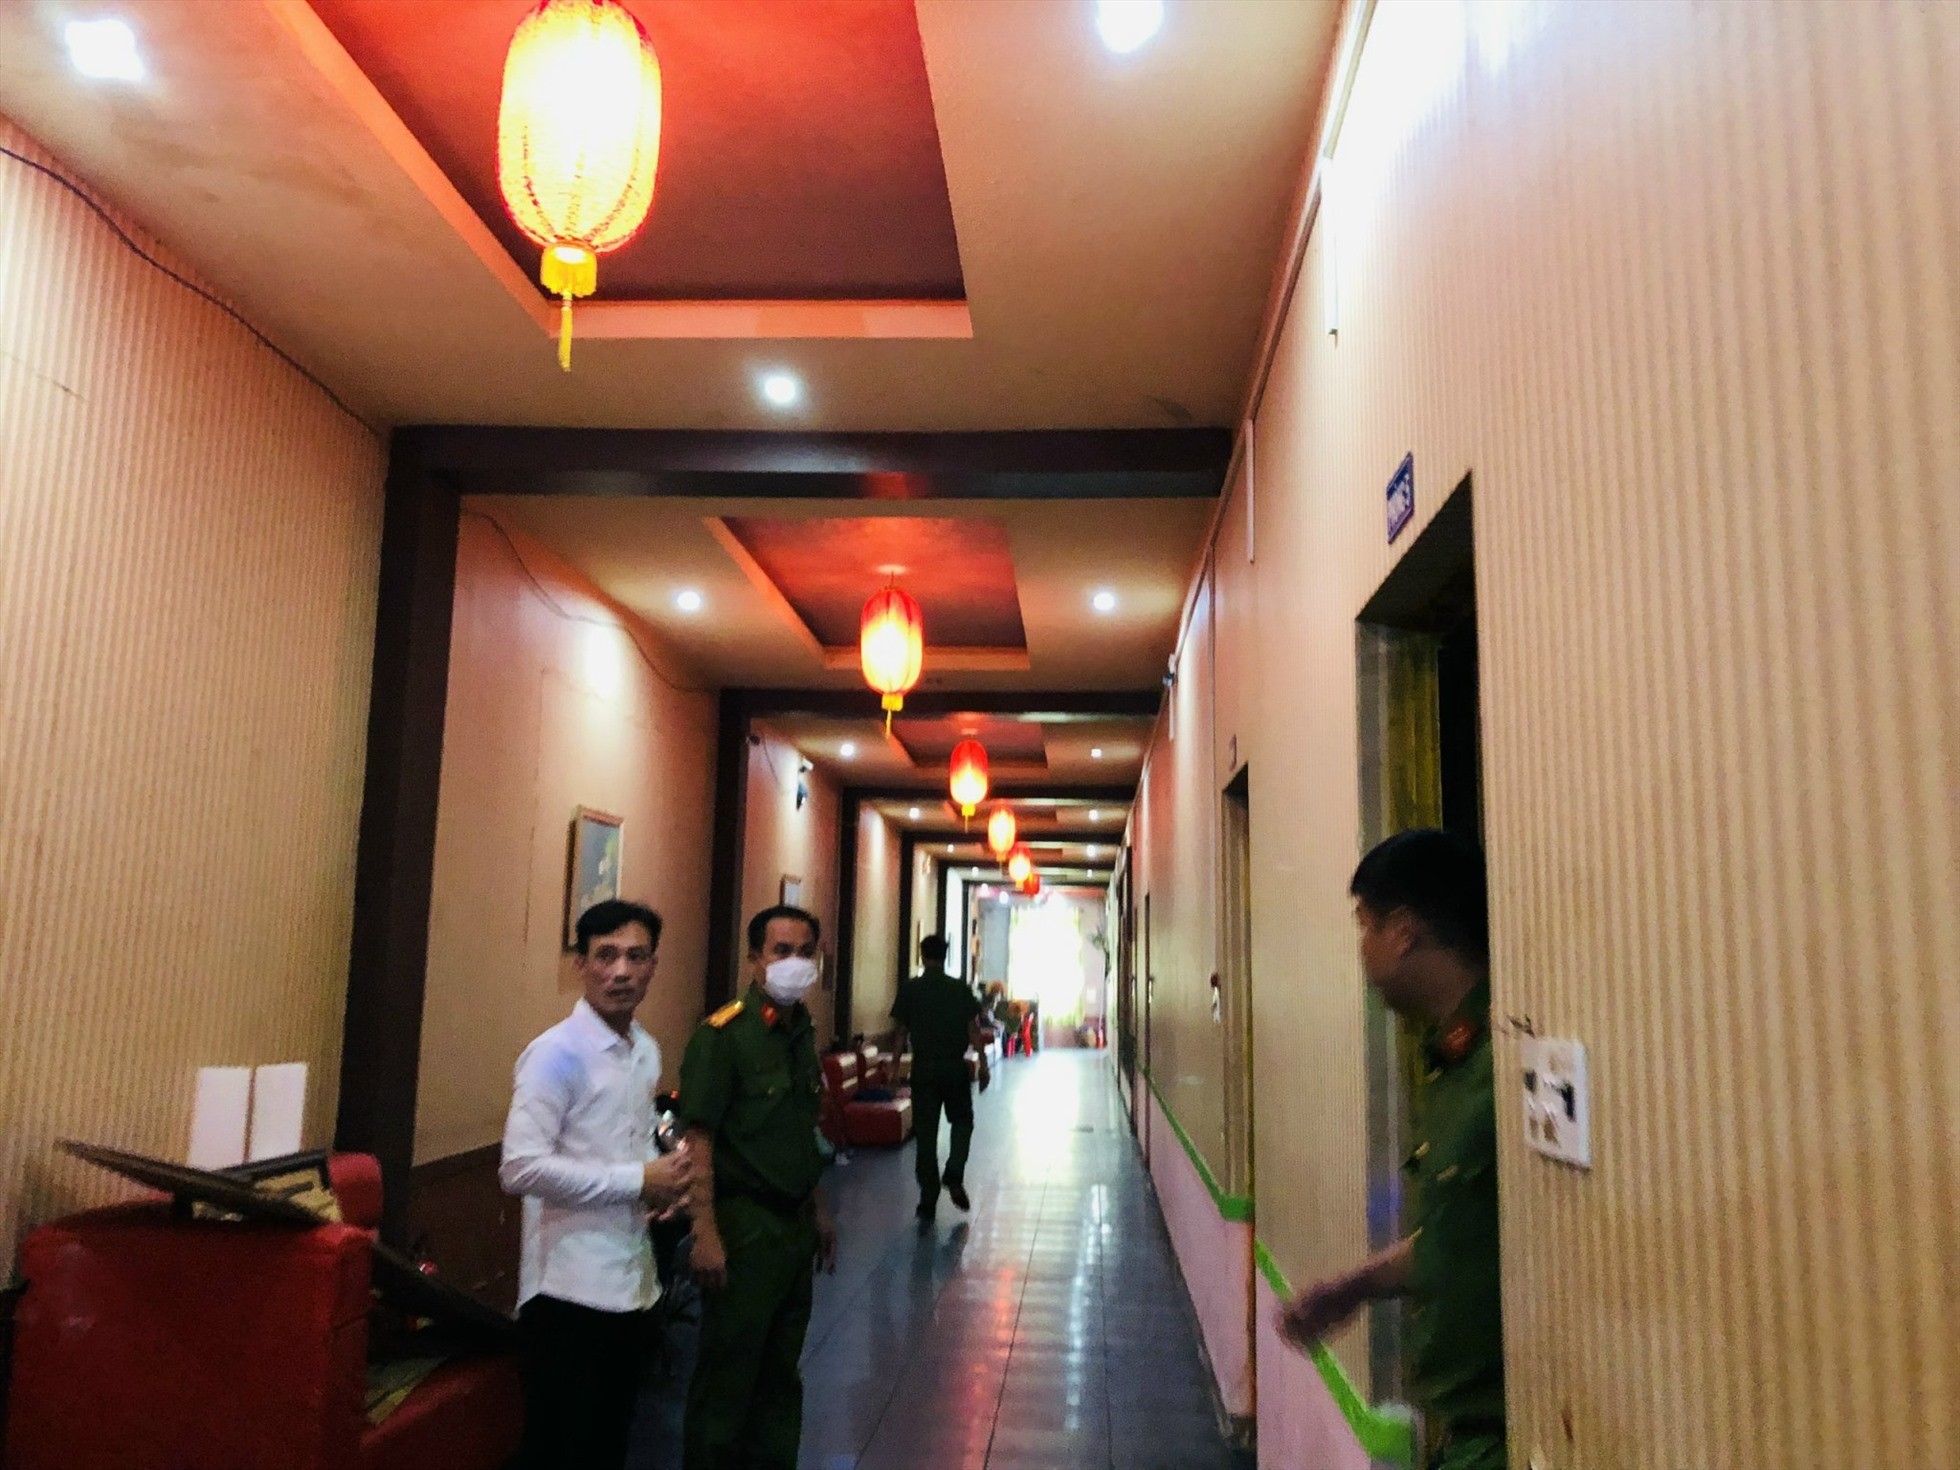 Tại thị xã Tân Uyên, công an kiểm tra 22 cơ sở karaoke trên địa bàn. Qua kiểm tra, xử lý 14 cơ sở vi phạm. Công an thị xã Tân Uyên đã tạm đình chỉ hoạt động 1 cơ sở vi phạm các quy định về an toàn phòng cháy chữa cháy và cứu nạn cứu hộ.